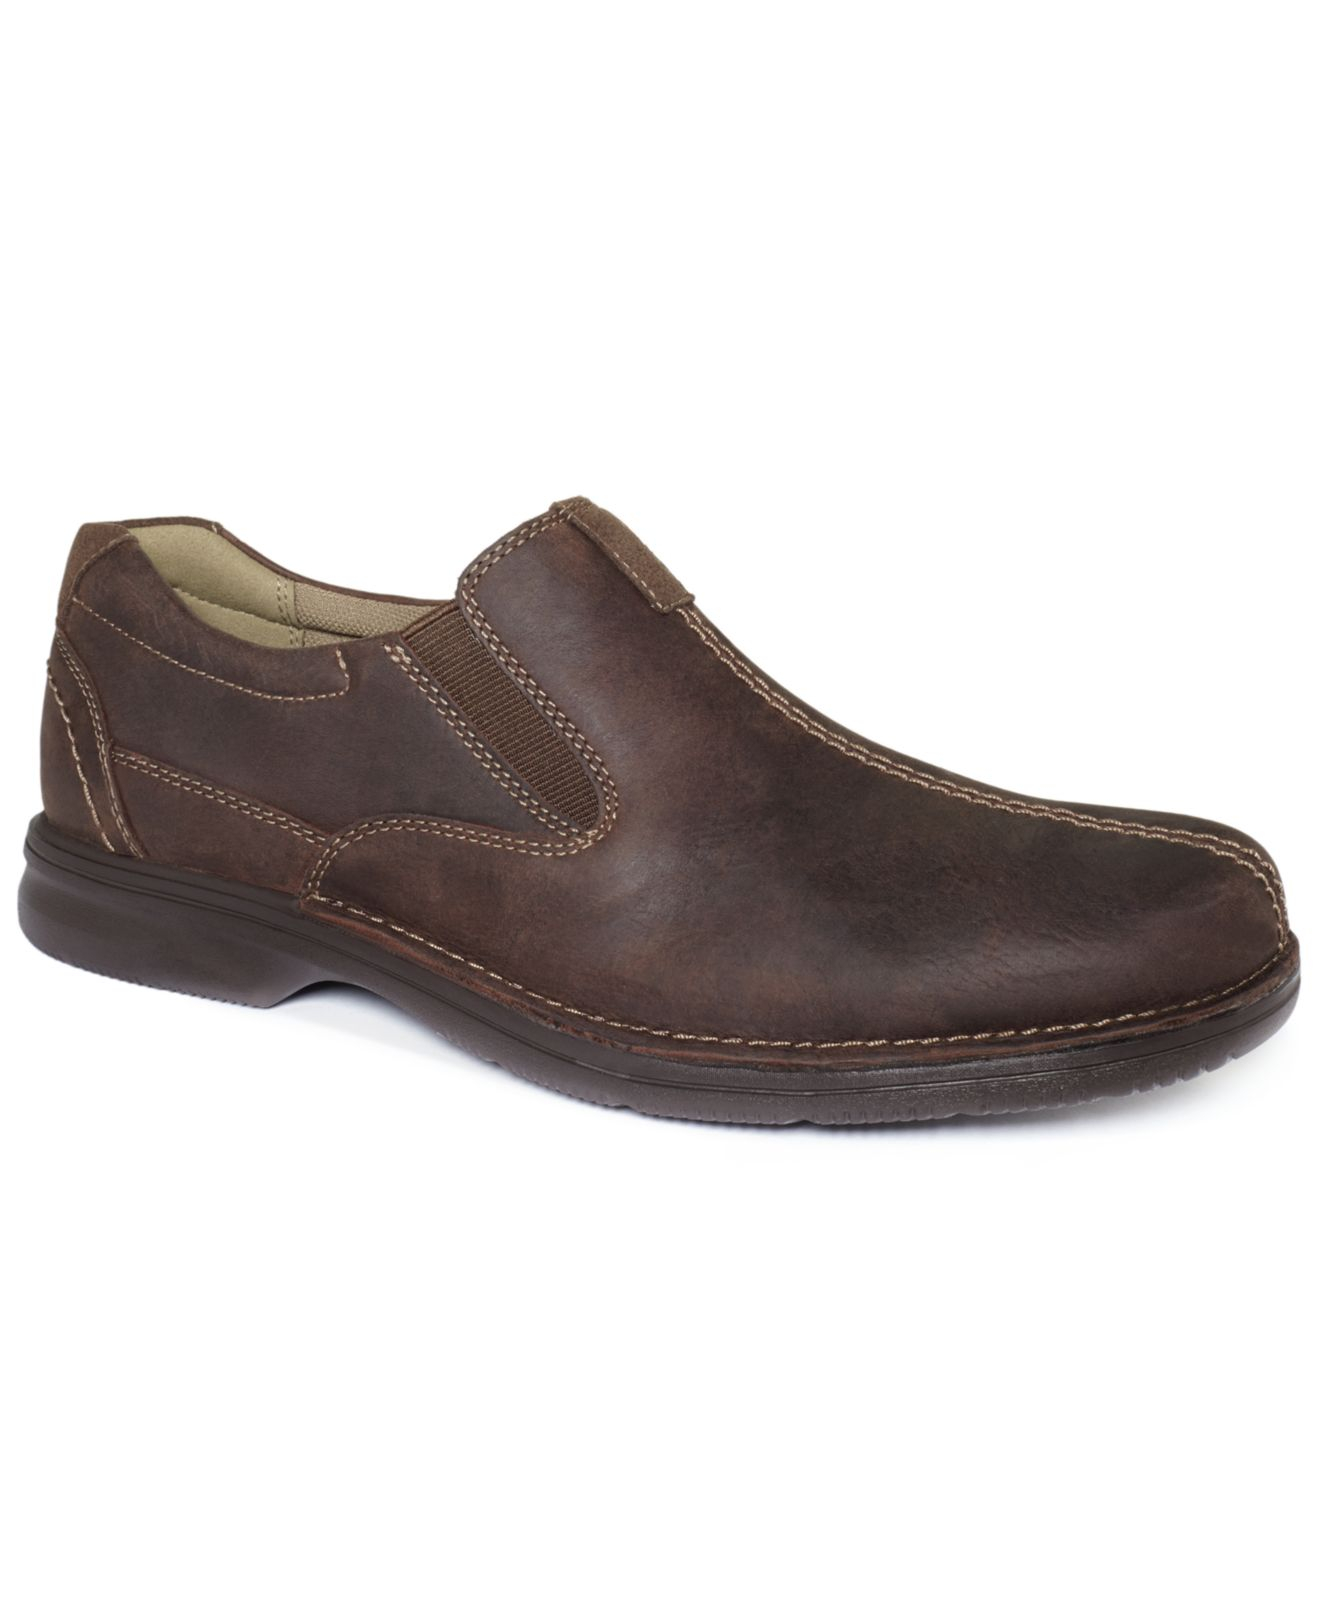 Lyst - Clarks Men's Senner Falls Slip-on Shoes in Brown for Men